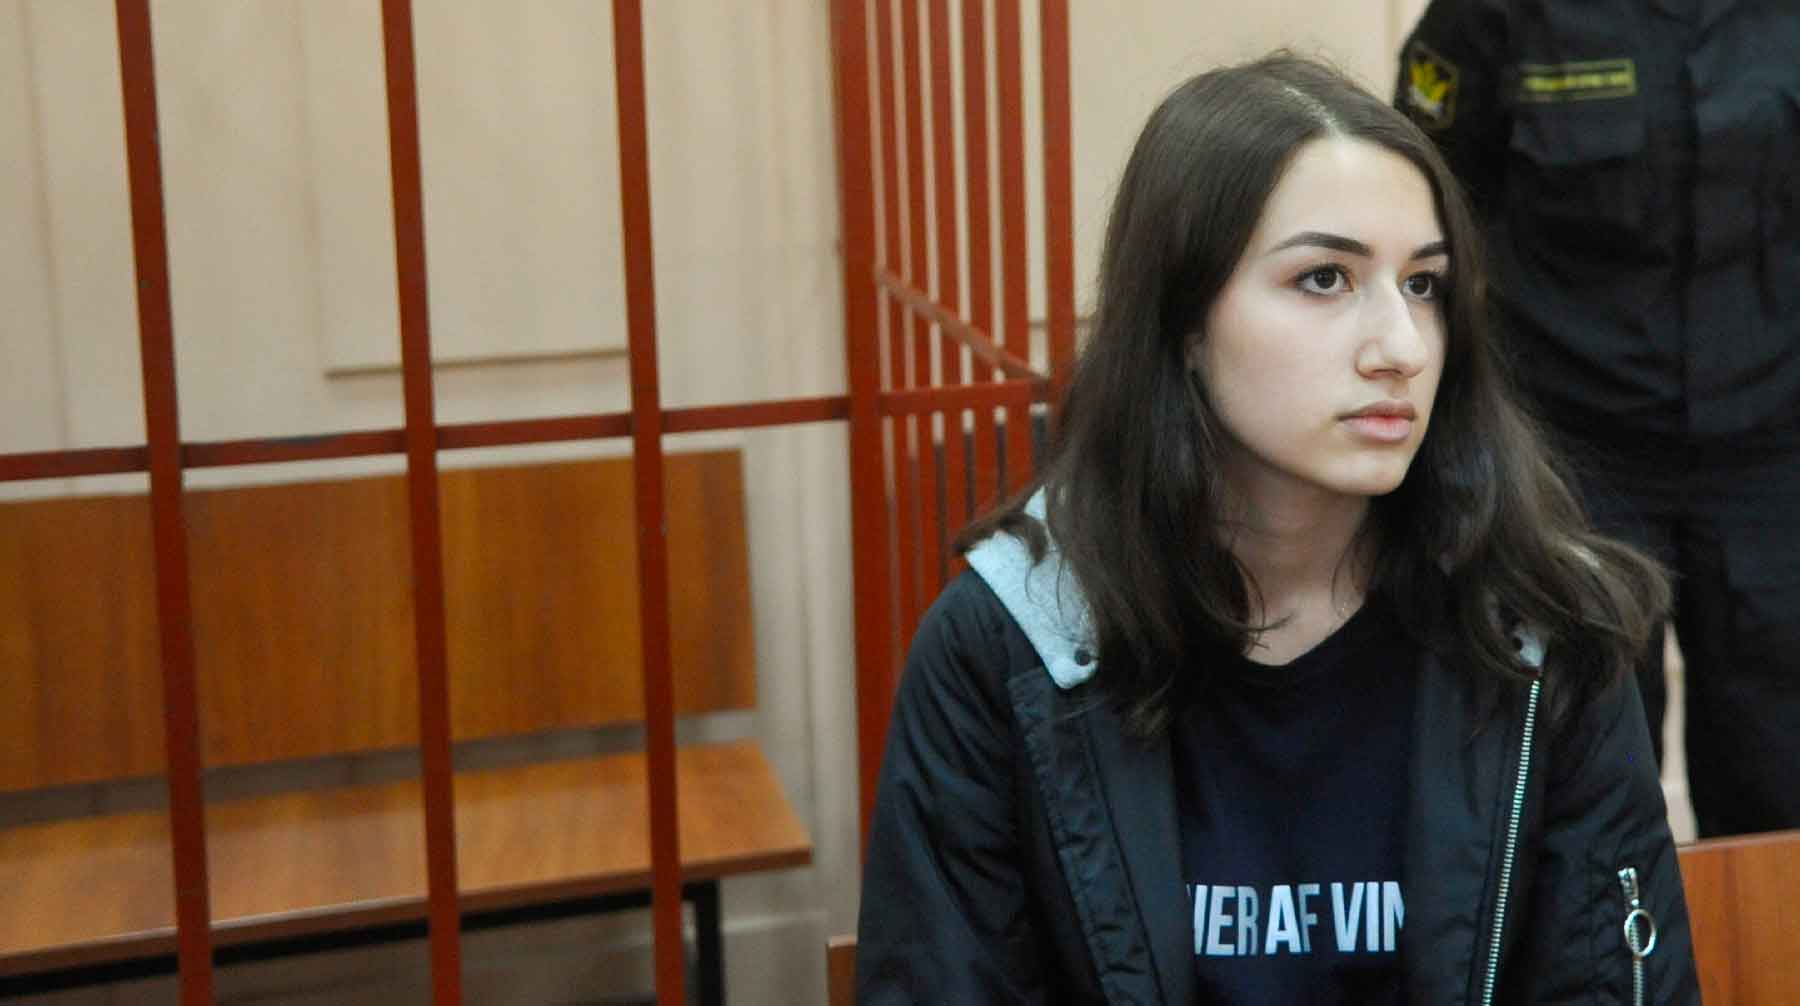 Следователи отказались возбуждать уголовное дело против мужчины в связи с его смертью, рассказали адвокаты сестер Хачатурян Мария Хачатурян